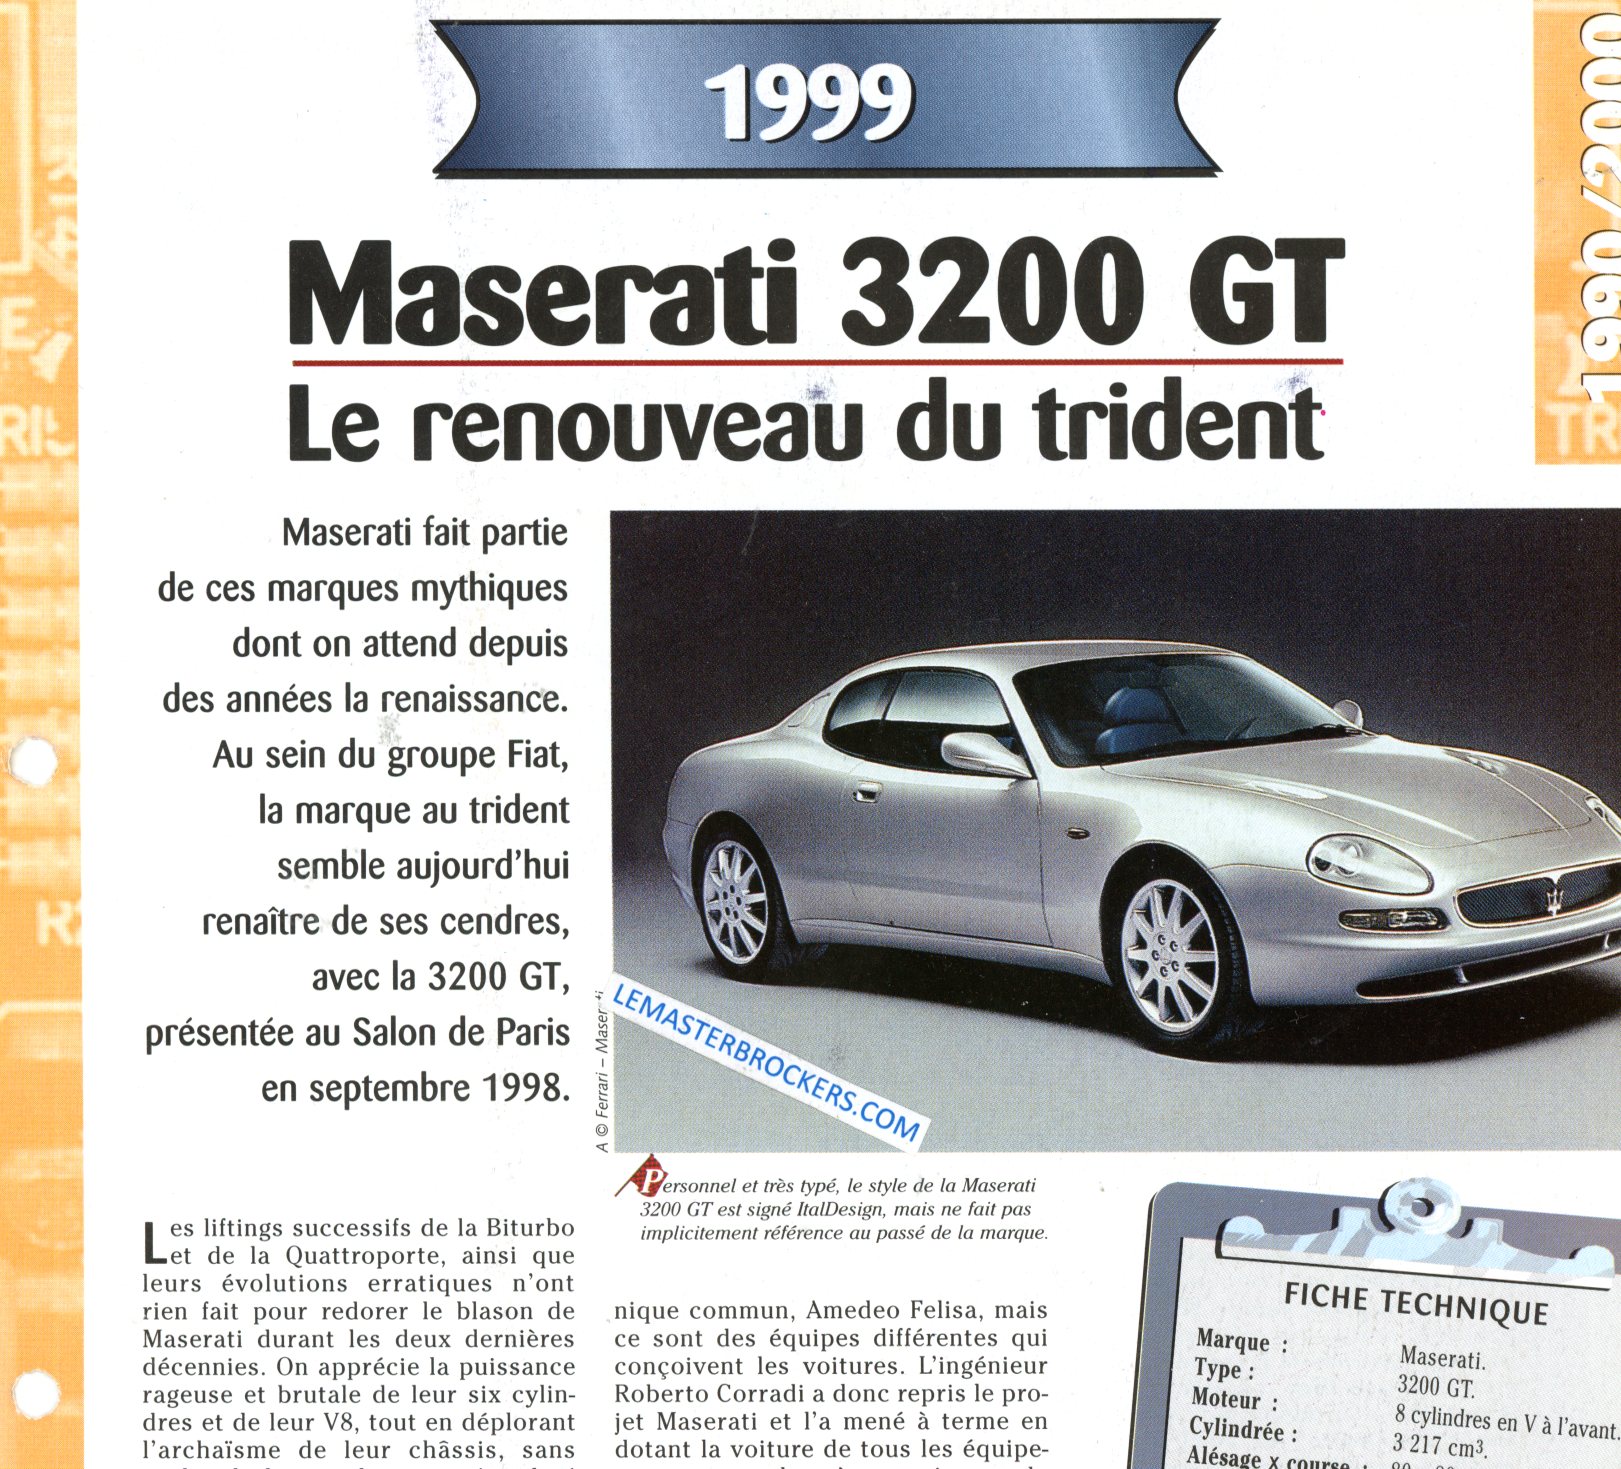 MASERATI 3200 GT 1999 FICHE TECHNIQUE